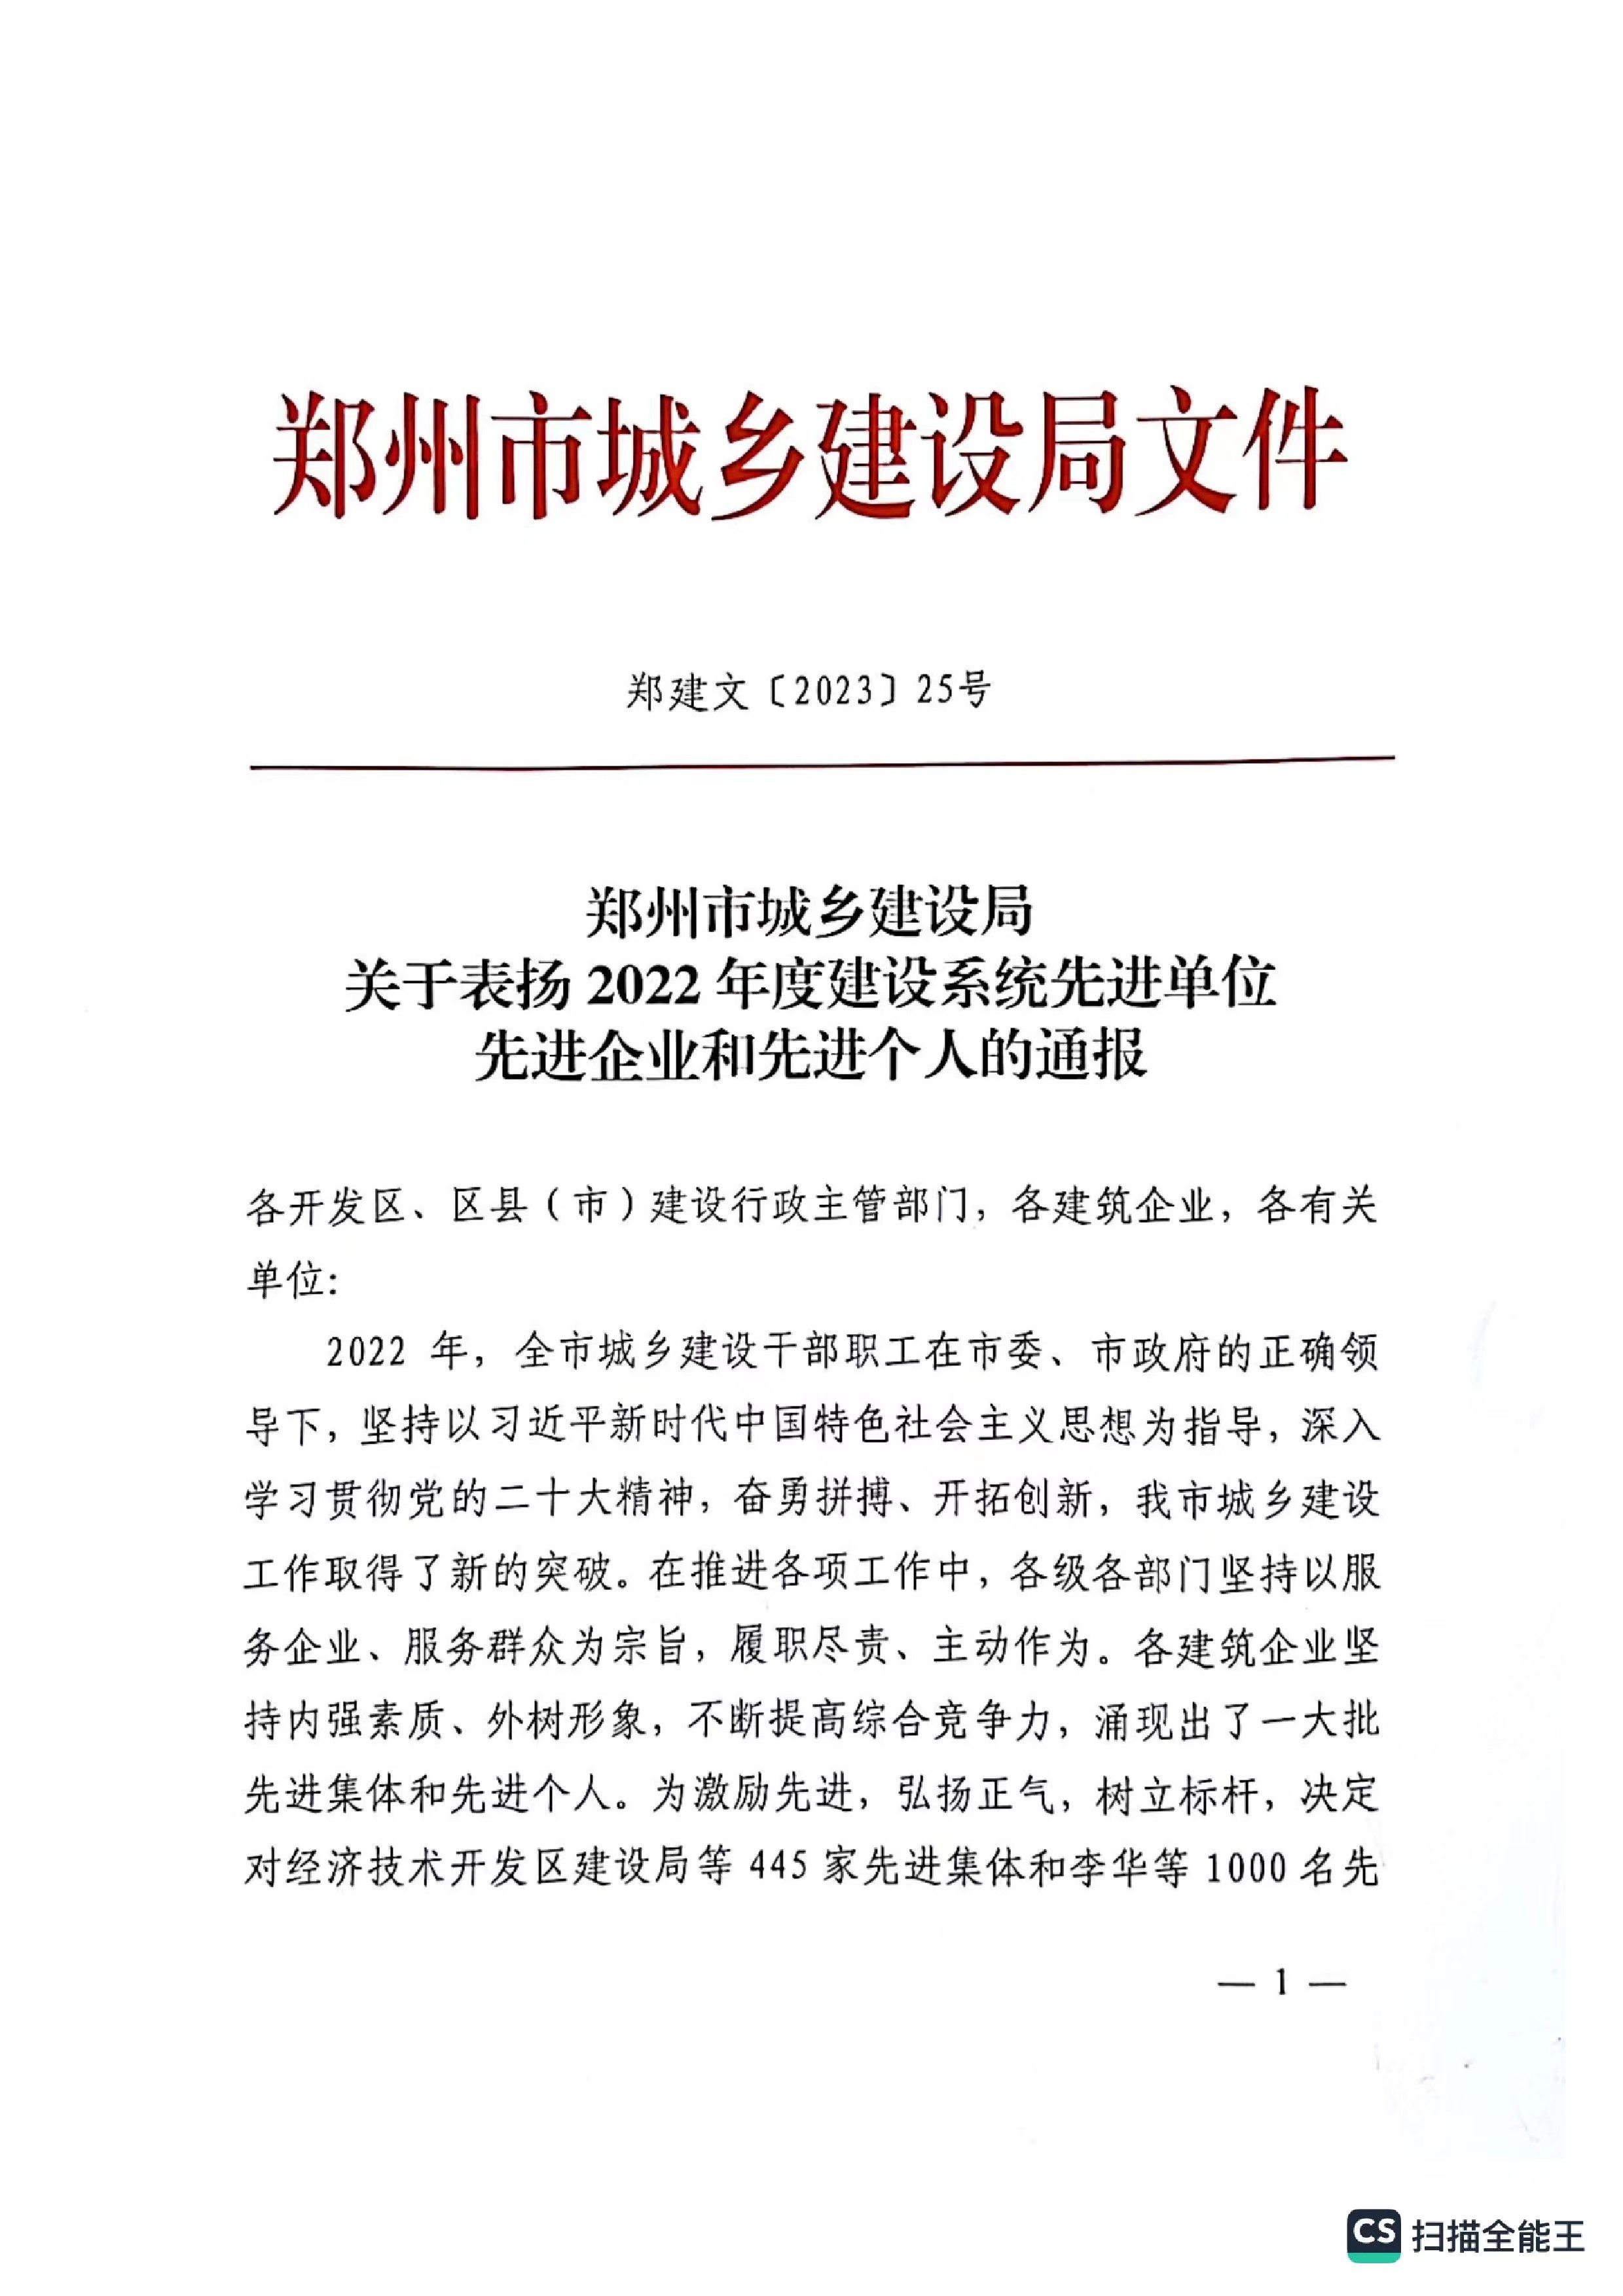 热烈祝贺我公司获得郑州市城乡建设局评定“2022年度建设系统先进单位“企业称号。